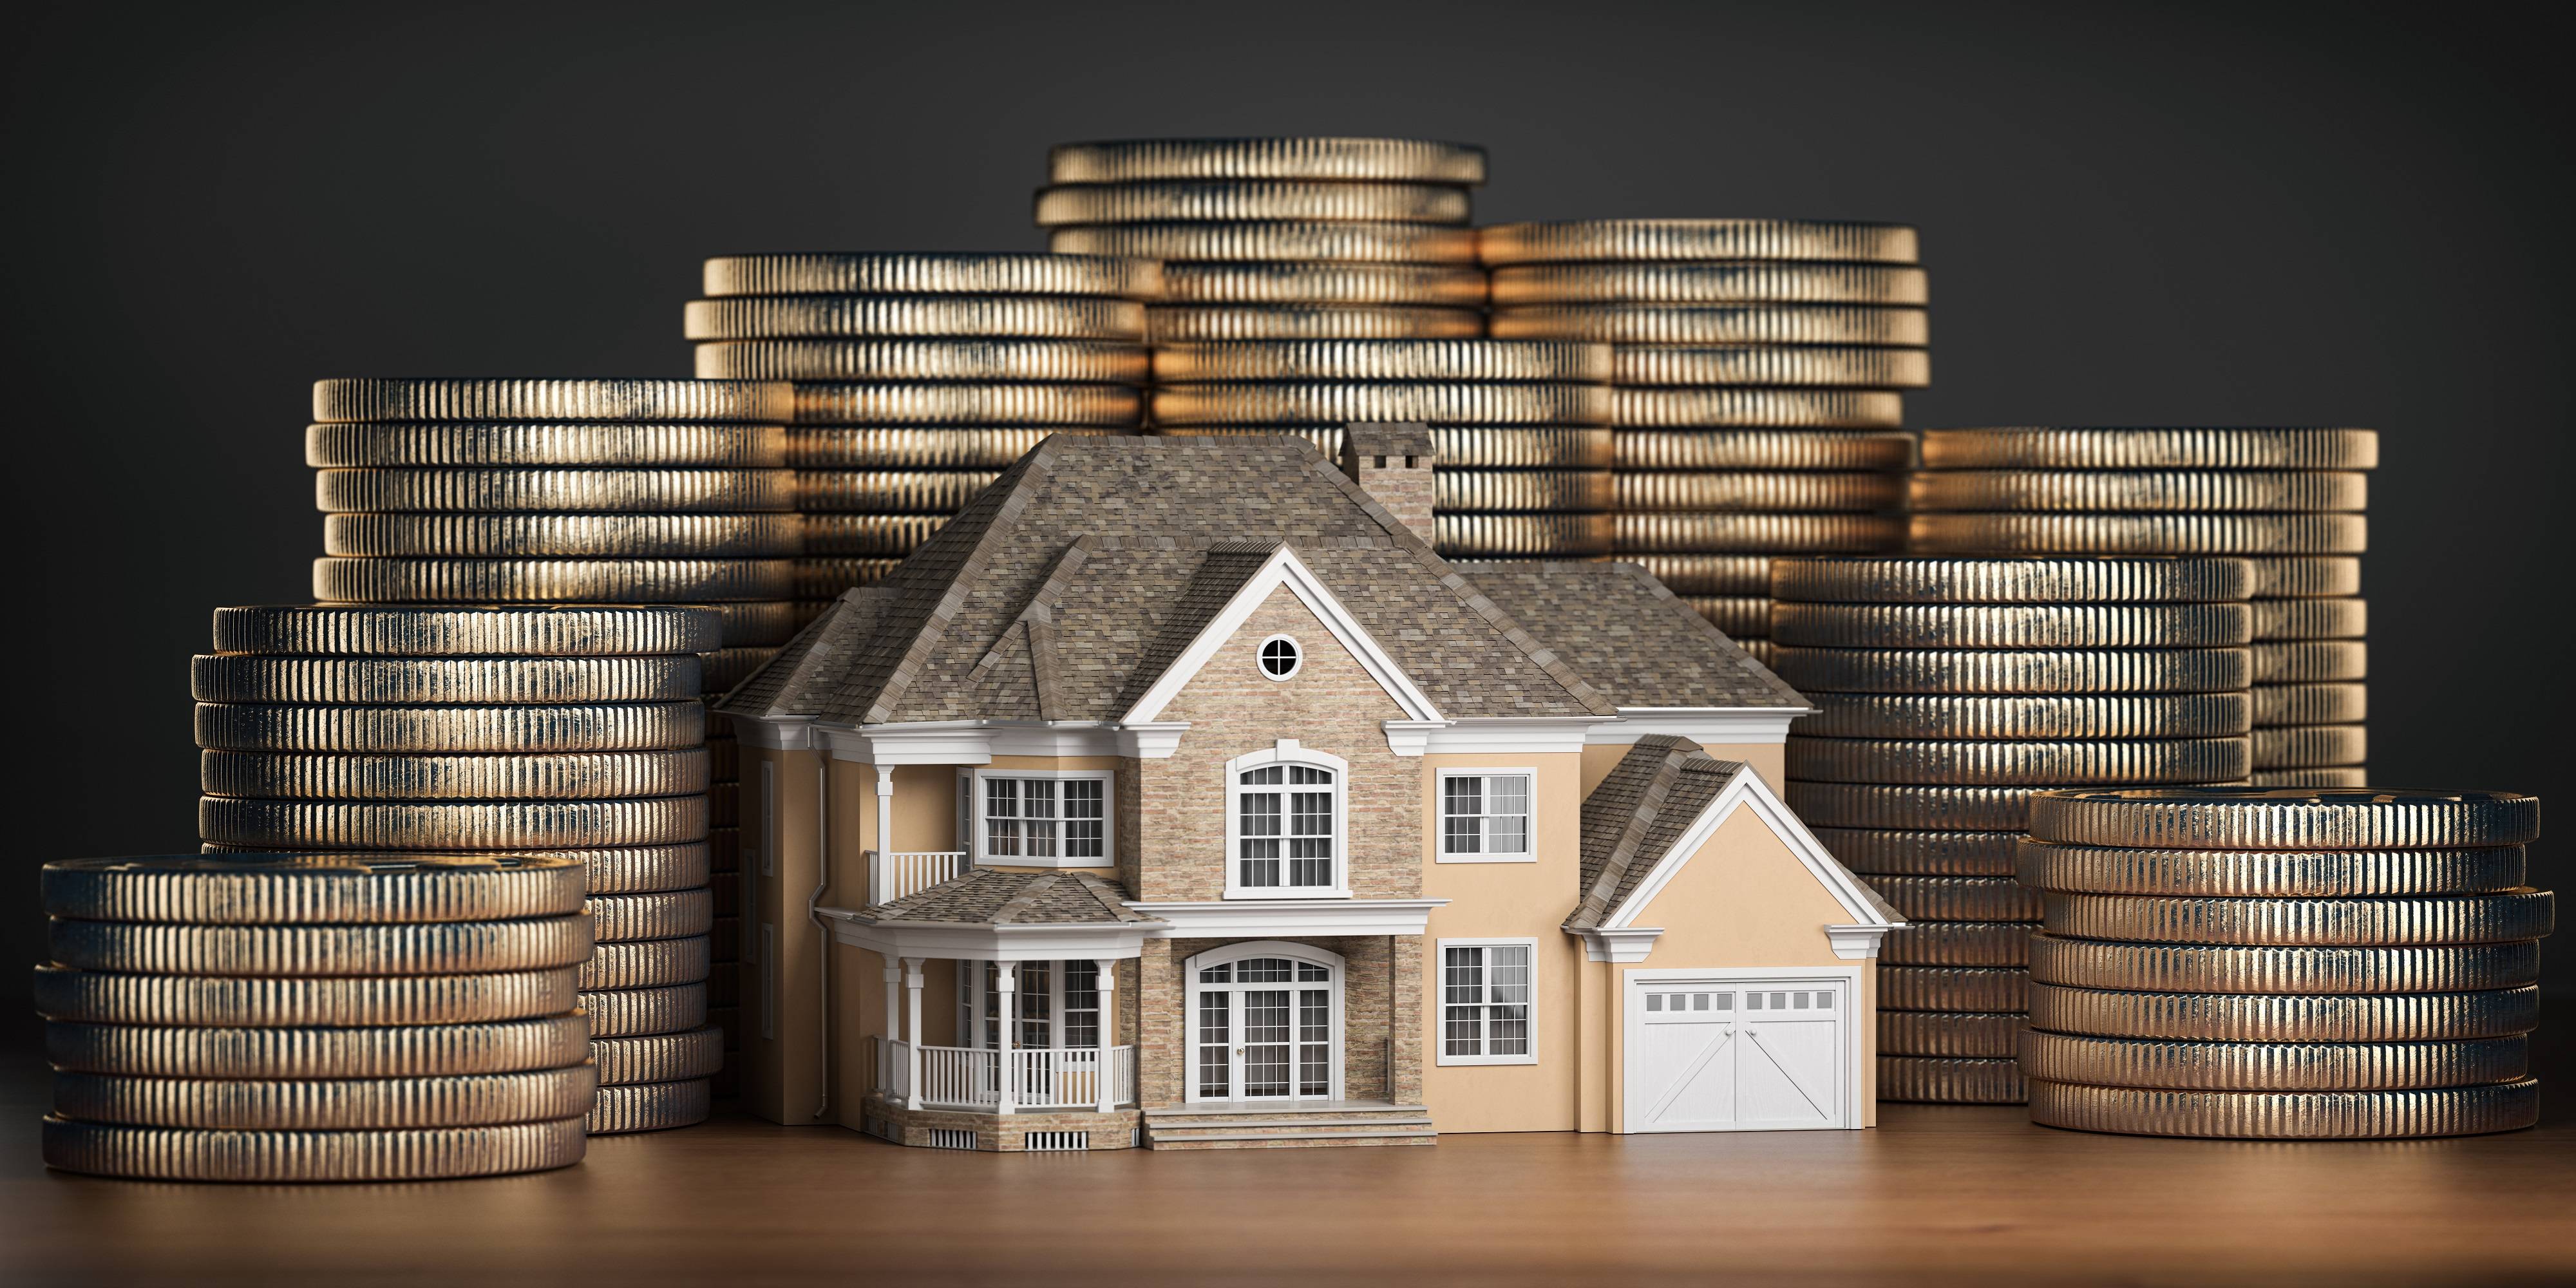 Выгодно и надежно ли сегодня совершать инвестиции в недвижимость?